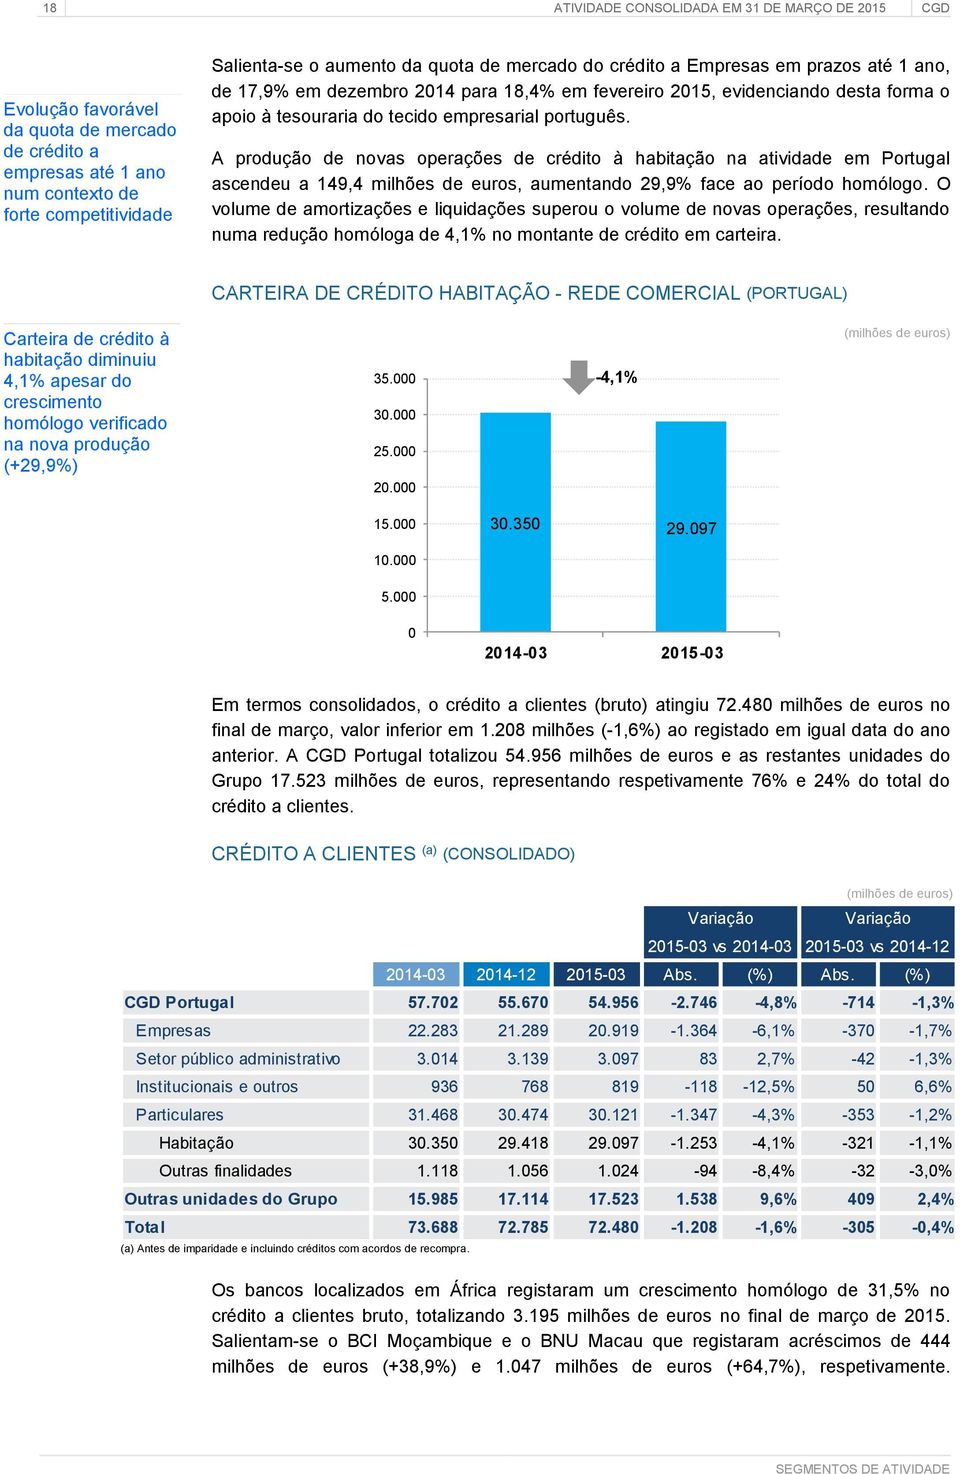 A produção de novas operações de crédito à habitação na atividade em Portugal ascendeu a 149,4 milhões de euros, aumentando 29,9% face ao período homólogo.